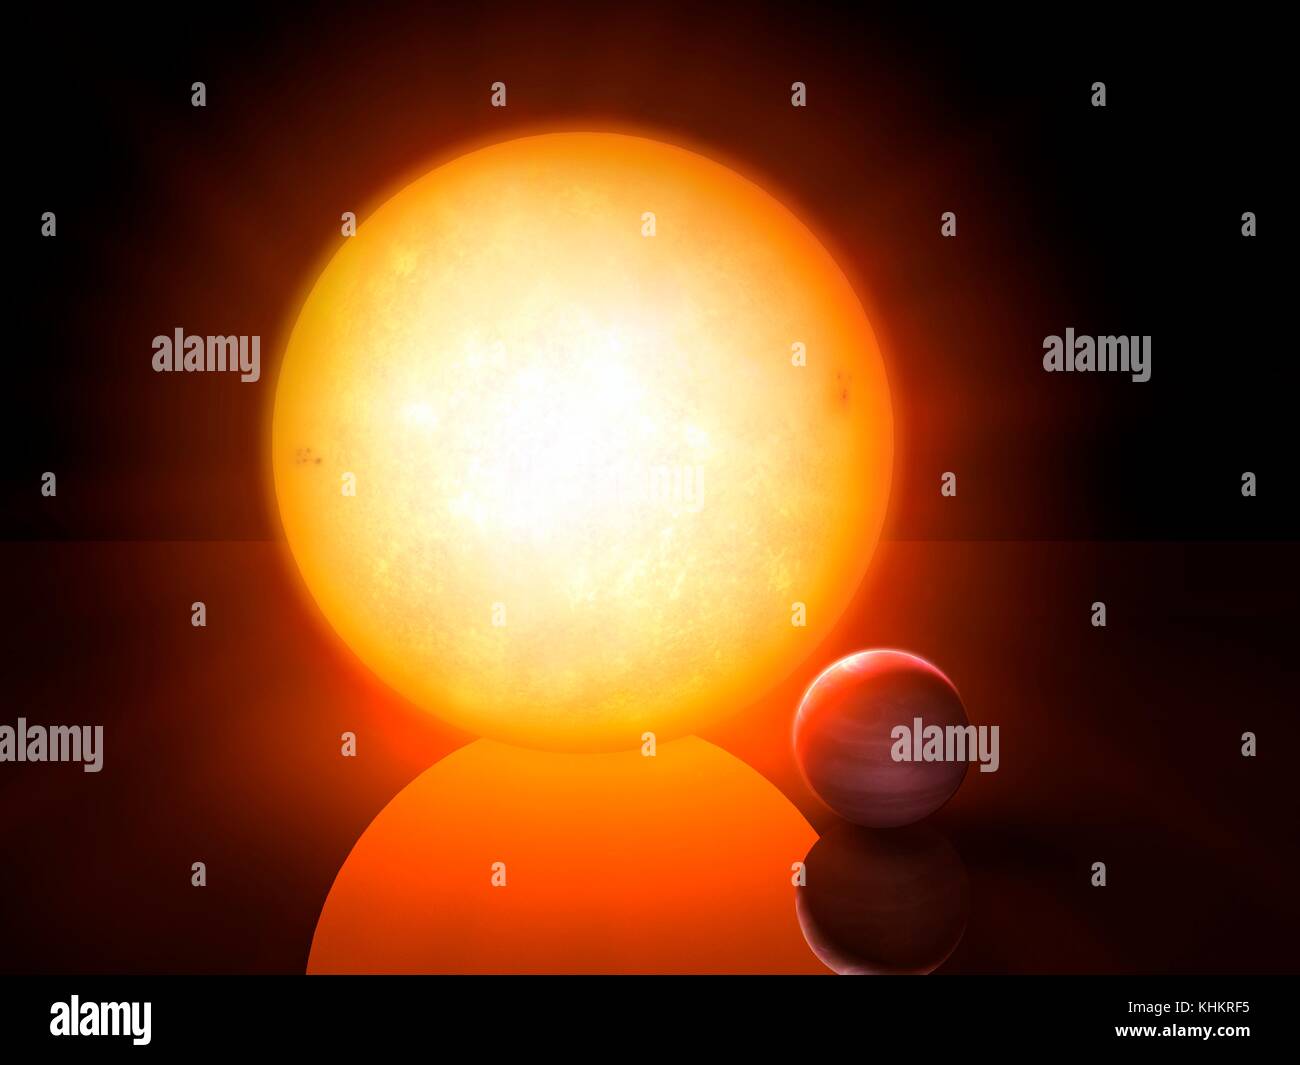 NGTS-1 Roter Zwerg (Mitte) und sein Planet (unten rechts), Illustration. Die NGTS (Next-Generation Transit Umfrage) in der Atacama-Wüste in Chile gelegen, mit einem primären Ziel extrasolare Planeten mit Massen und Größen zwischen denen von Erde und Neptun zu lokalisieren. Eine der Entdeckungen ist NGTS-1, einem Roten Zwerg etwa die Hälfte der Durchmesser der Sonne. Es gefunden wurde ein Gas Giant Planet host fast ein Viertel seiner Größe und ist damit der größte bekannte Planeten in Bezug auf die Sterne. Stockfoto